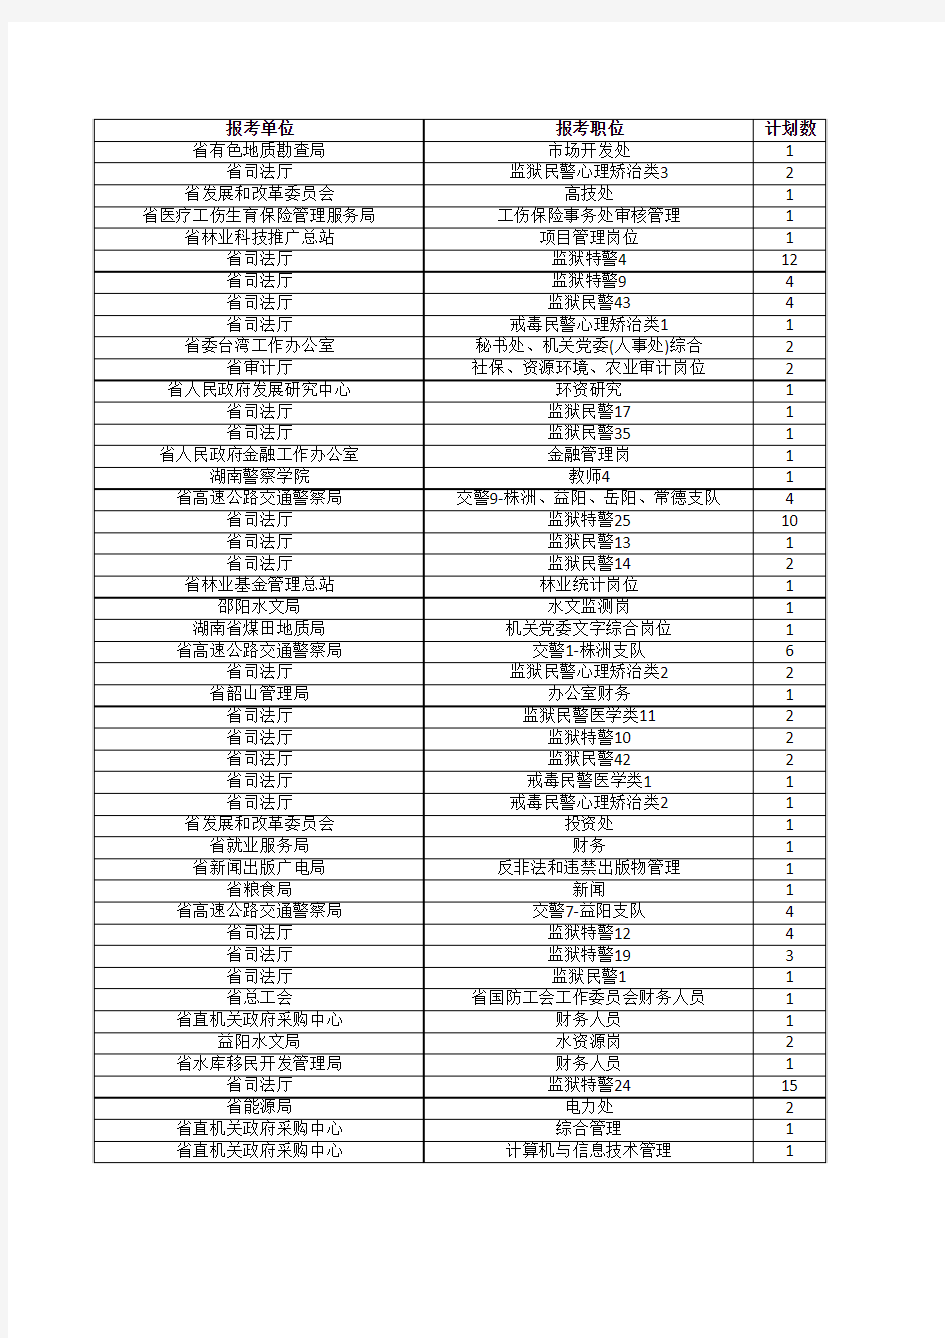 2015年湖南省公务员考试省直单位报名人数表